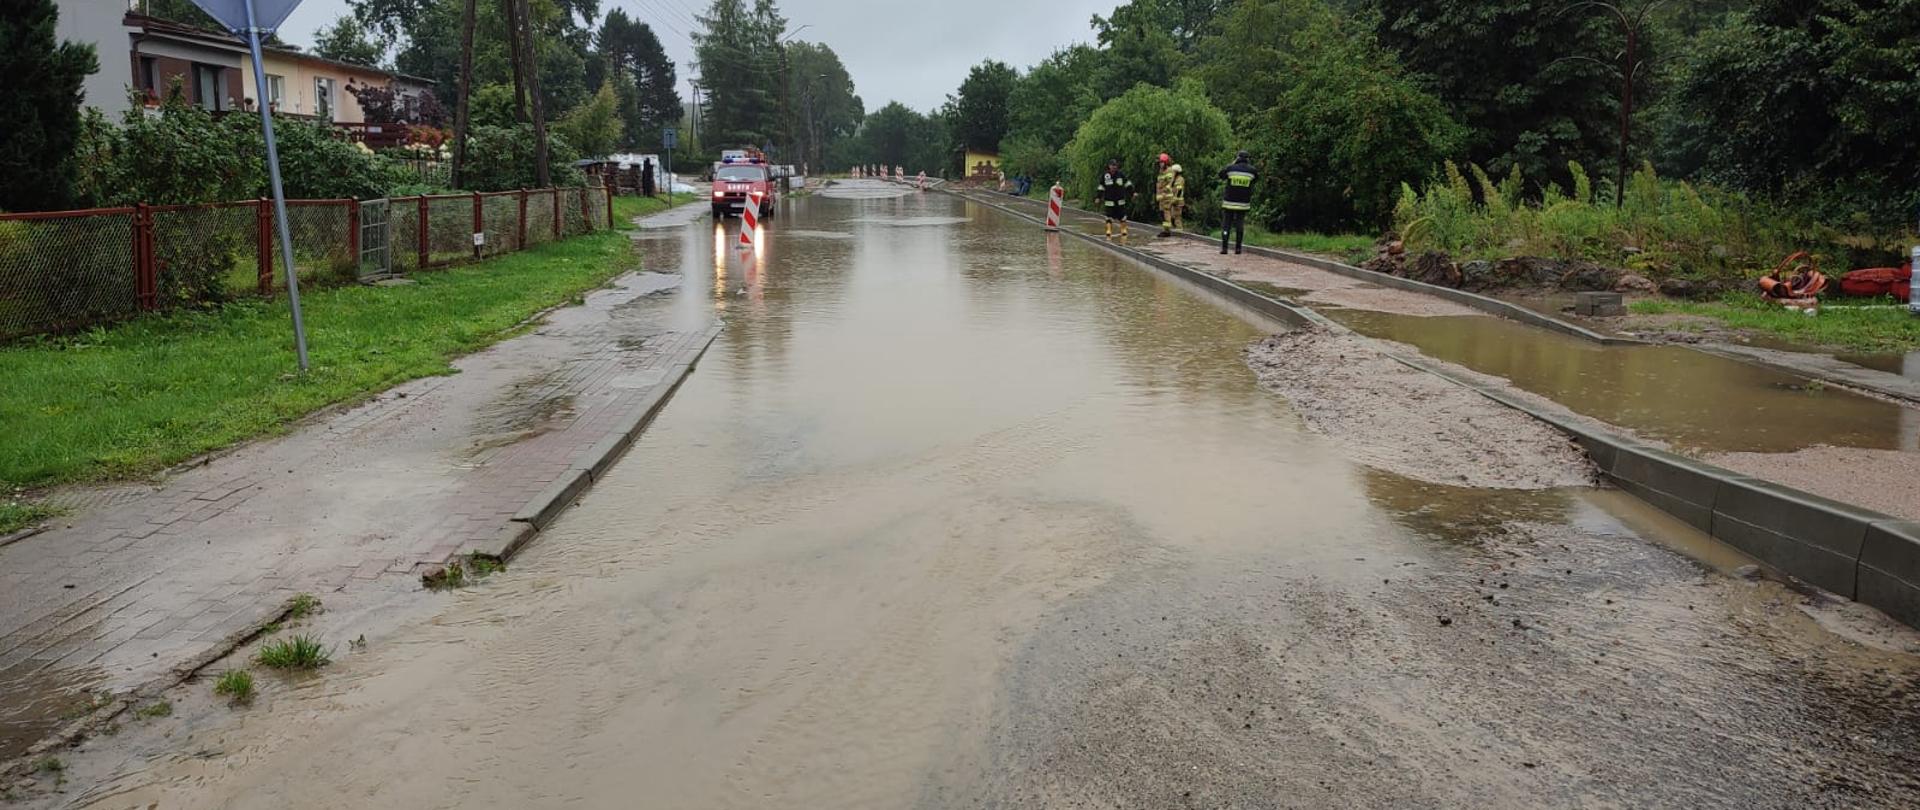 Zdjęcie przedstawia zalaną ulice.